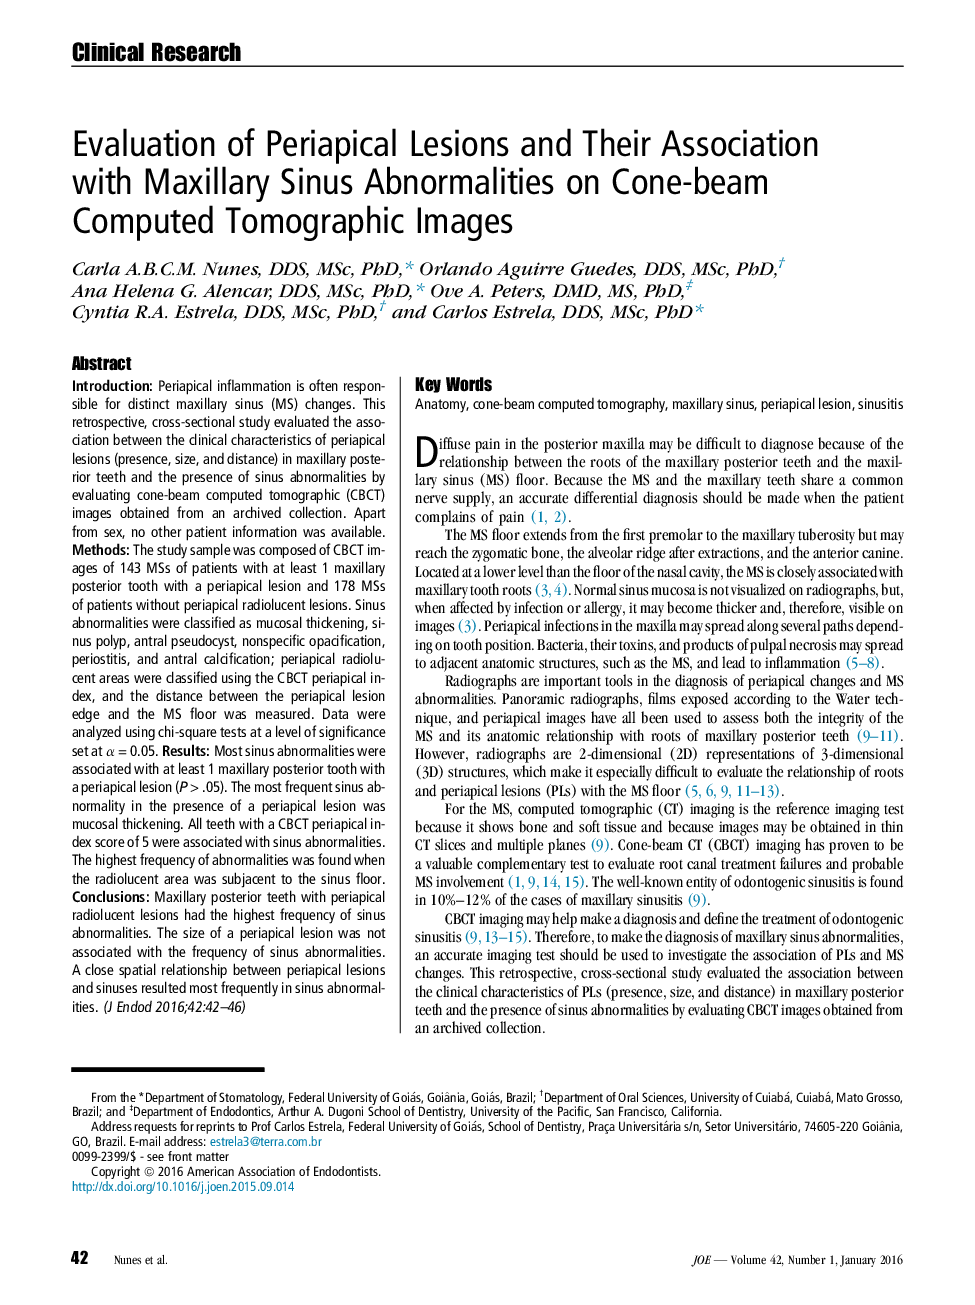 بررسی ضایعات پری اپیکال و ارتباط آنها با اختلالات سینوس ماگزیلاری بر روی تصاویر توموگرافی کامپیوتری 